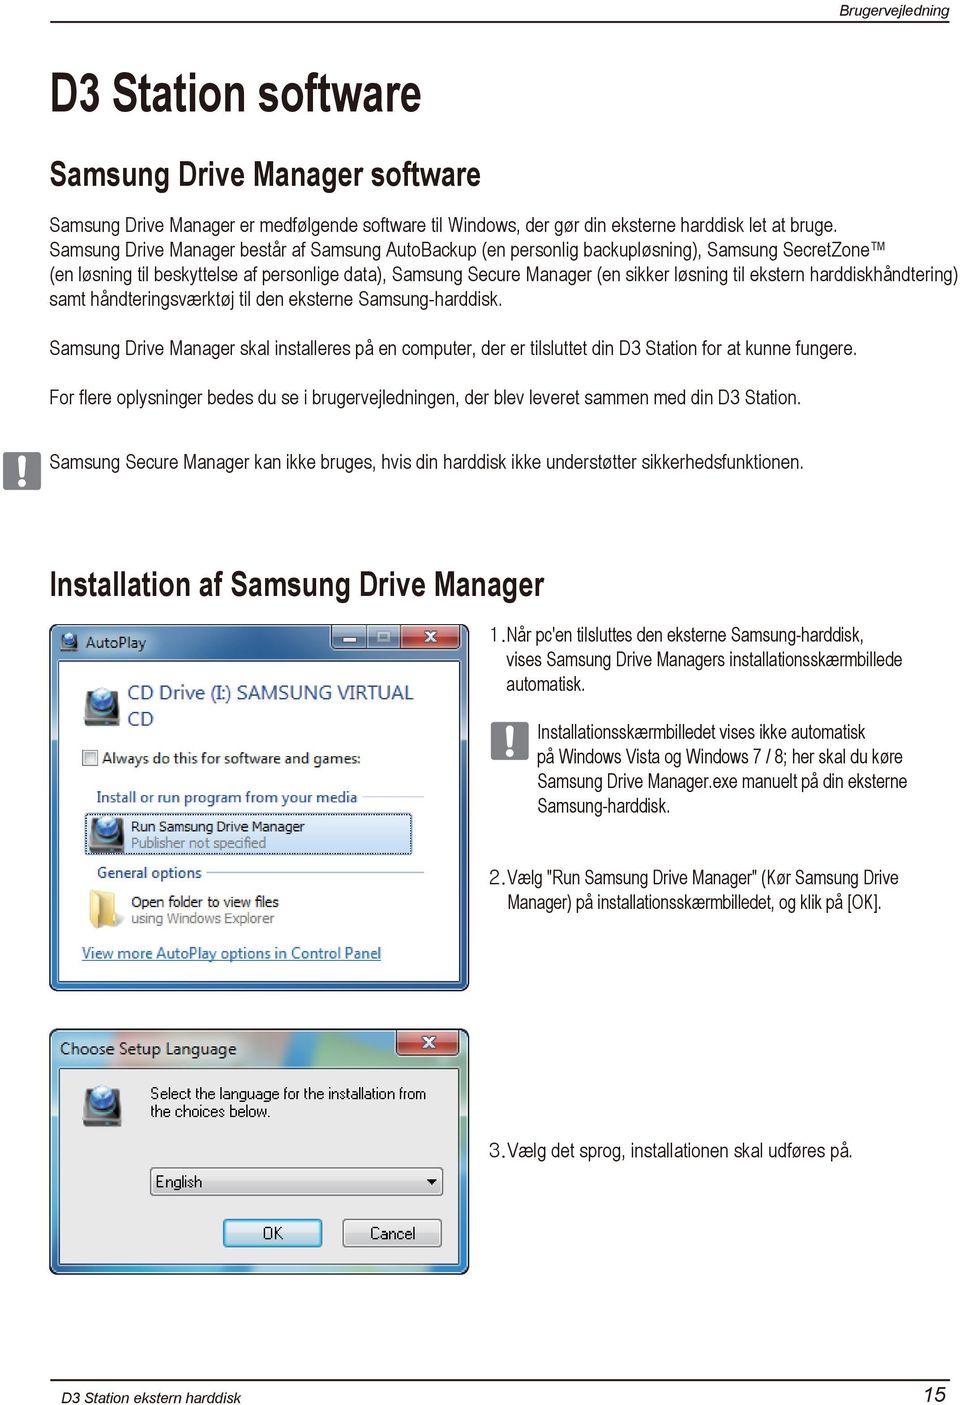 ekstern harddiskhåndtering) samt håndteringsværktøj til den eksterne Samsung-harddisk. Samsung Drive Manager skal installeres på en computer, der er tilsluttet din D3 Station for at kunne fungere.